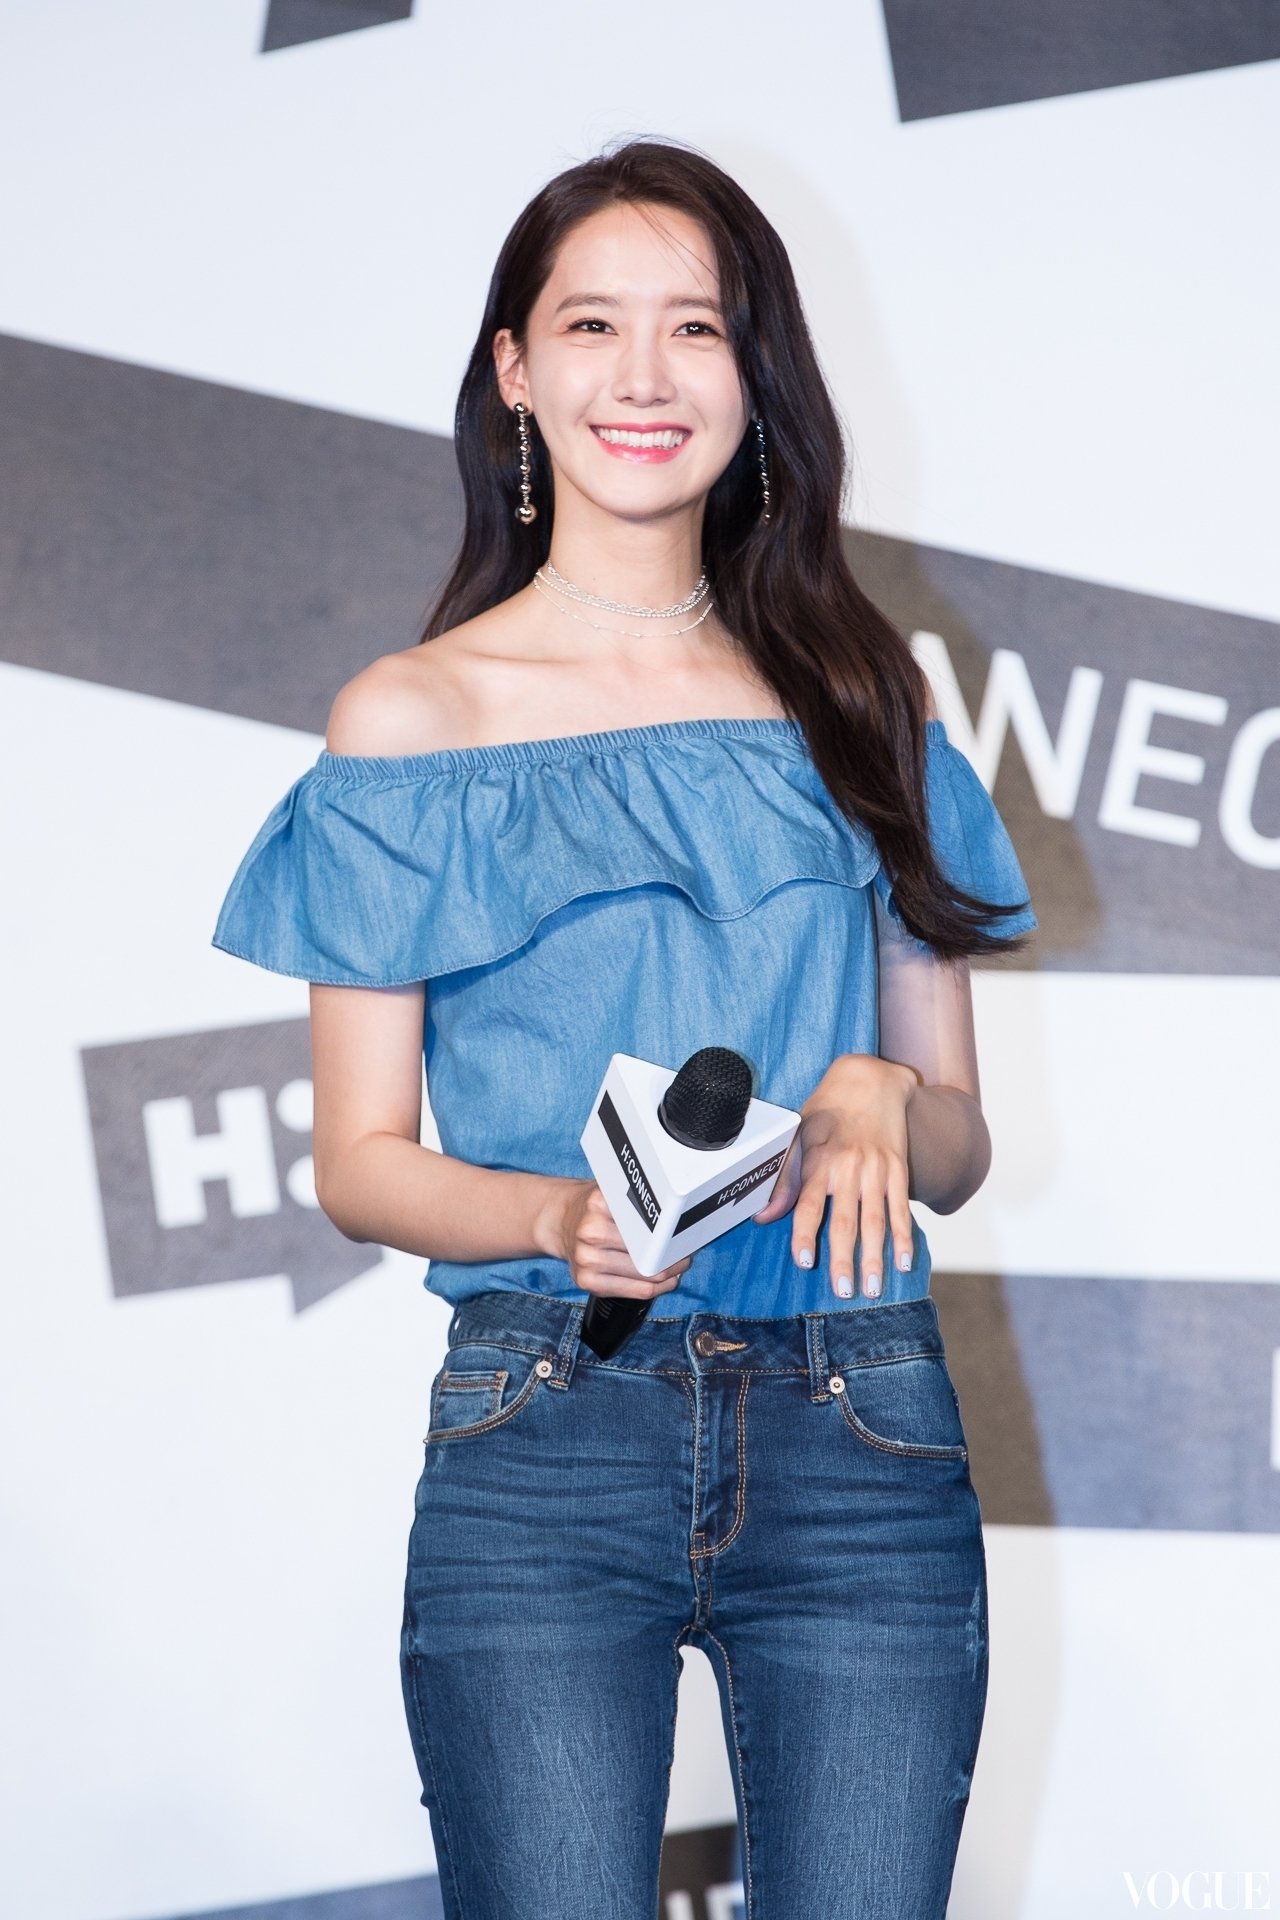 [PIC][22-07-2017]YoonA khởi hành đi Đài Loan để tham dự buổi Fanmeeting cho thương hiệu "H:CONNECT" vào hôm nay - Page 3 ODYKzf3JAu-3000x3000